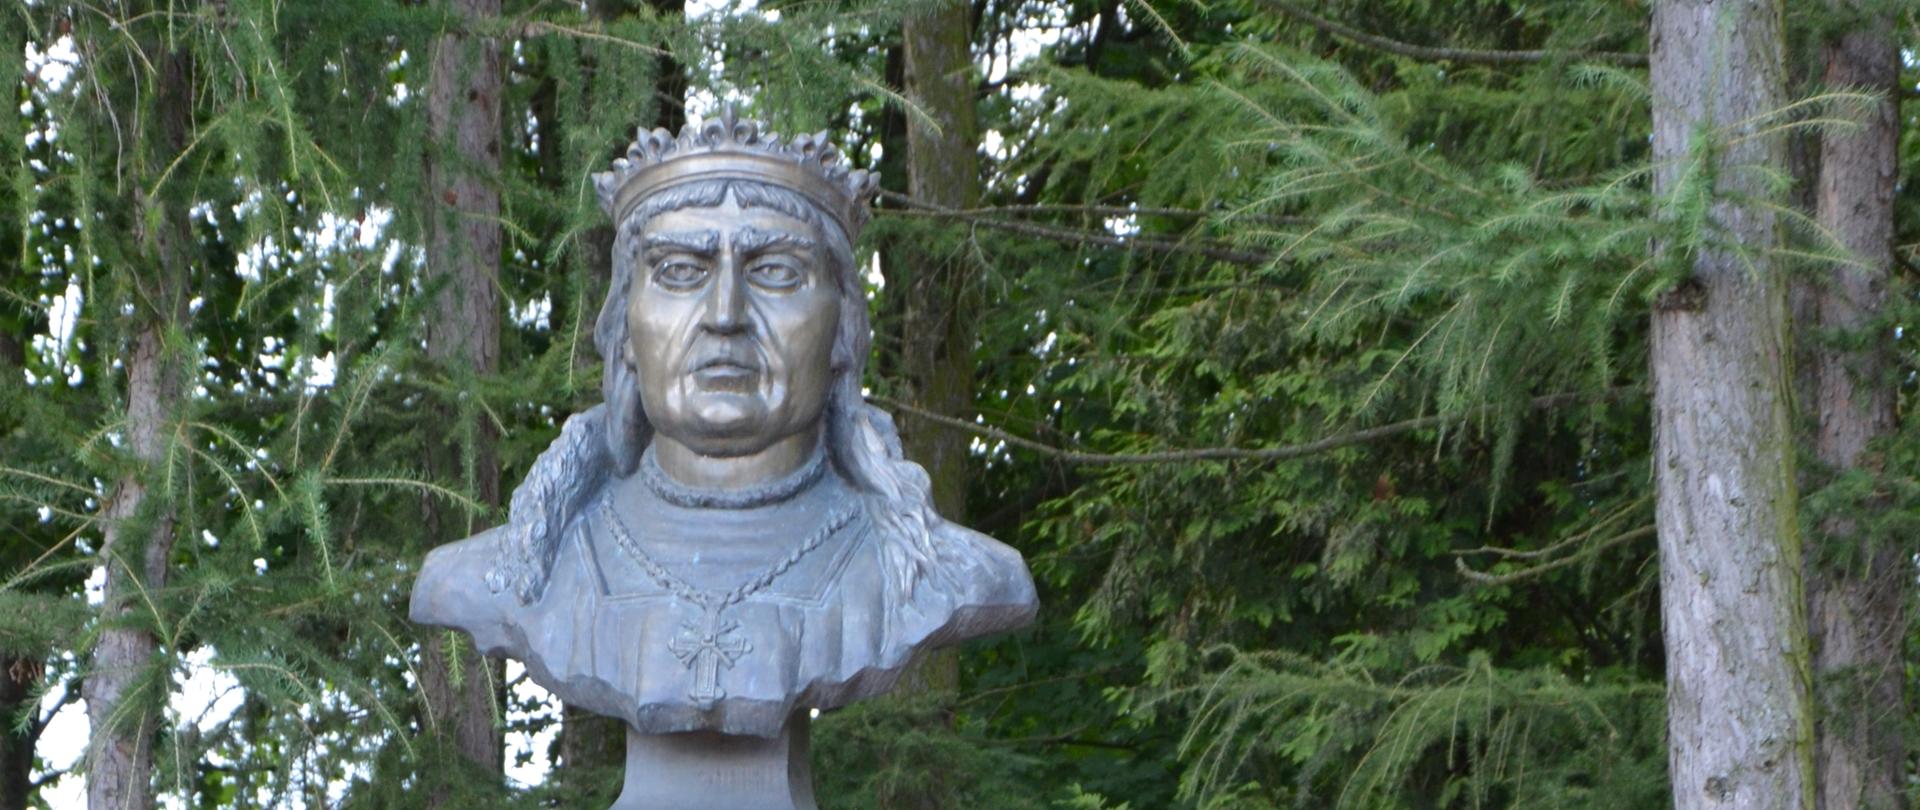 Pomnik Zygmunta I Starego w Kleszczelach